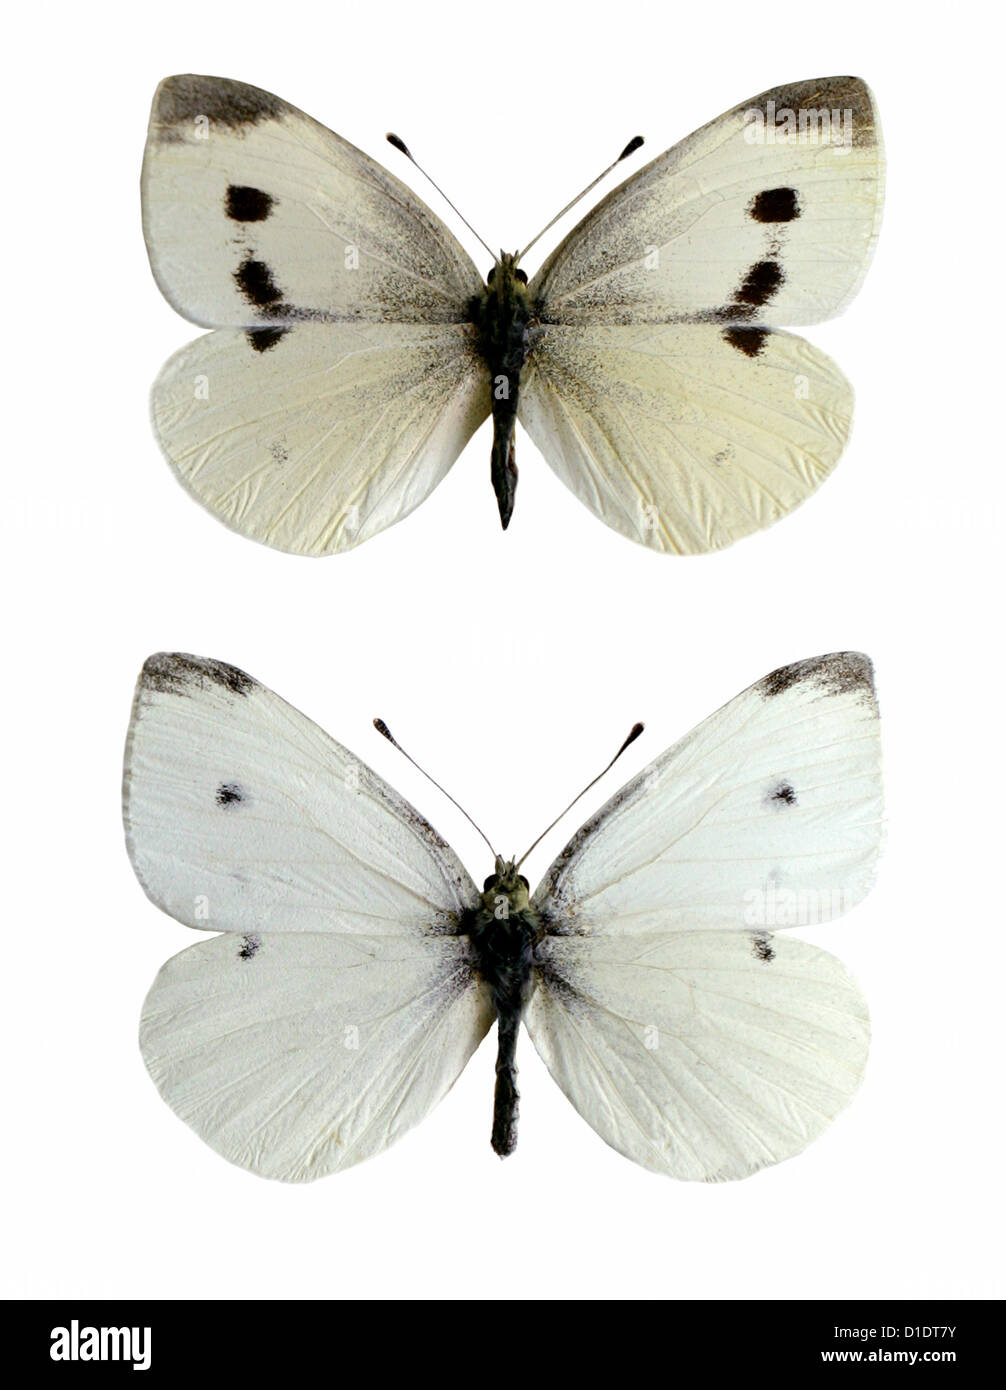 Les petits papillons blancs, Pieris rapae, Nymphalidae, lépidoptères. Mounted specimens. Photo/découpe. Femelle (en haut), de sexe masculin (en bas). Banque D'Images